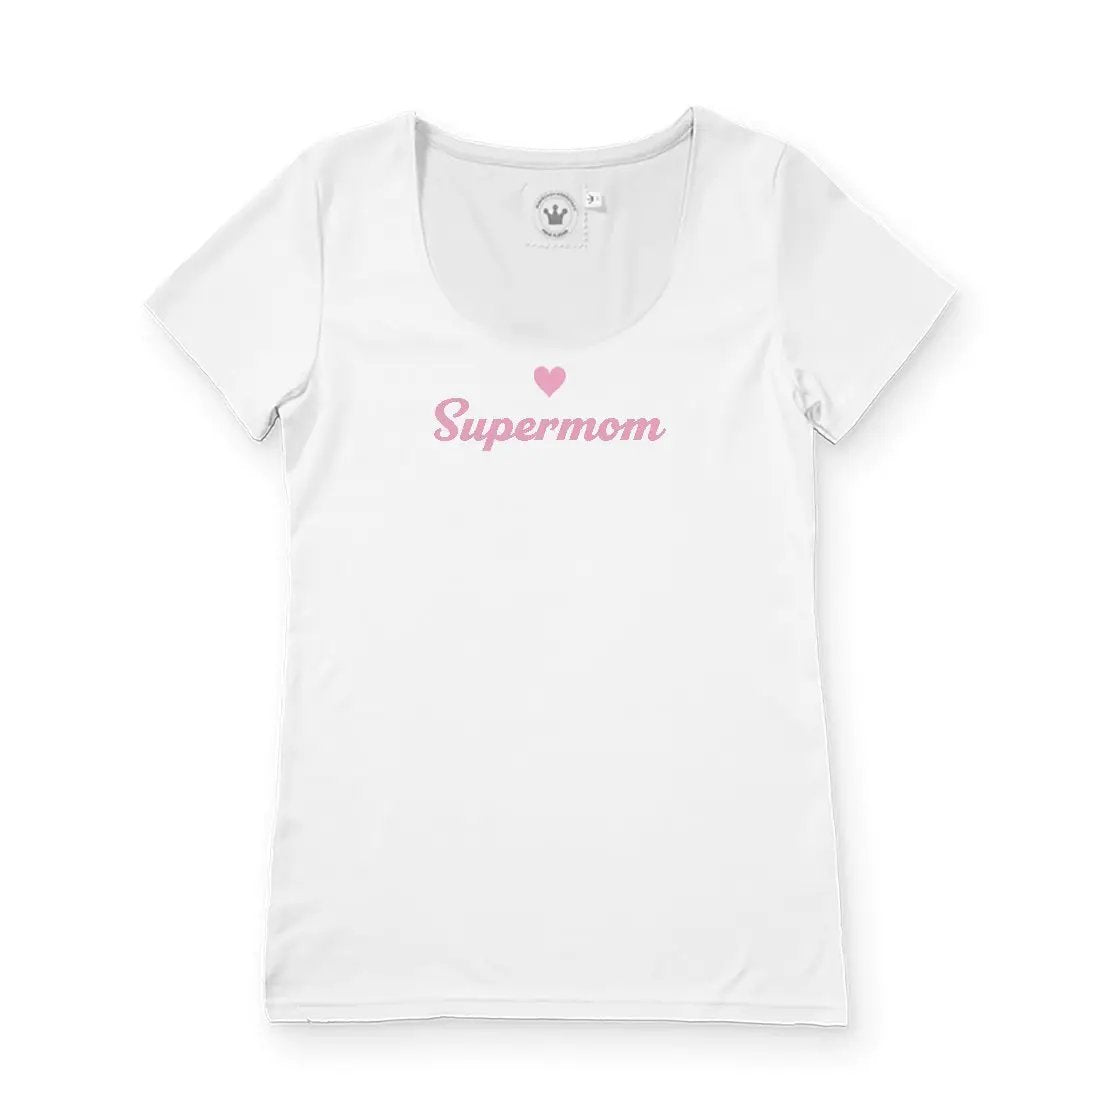 Damen T-Shirt Muttertag "Supermom" - Kaufhaus des Südens